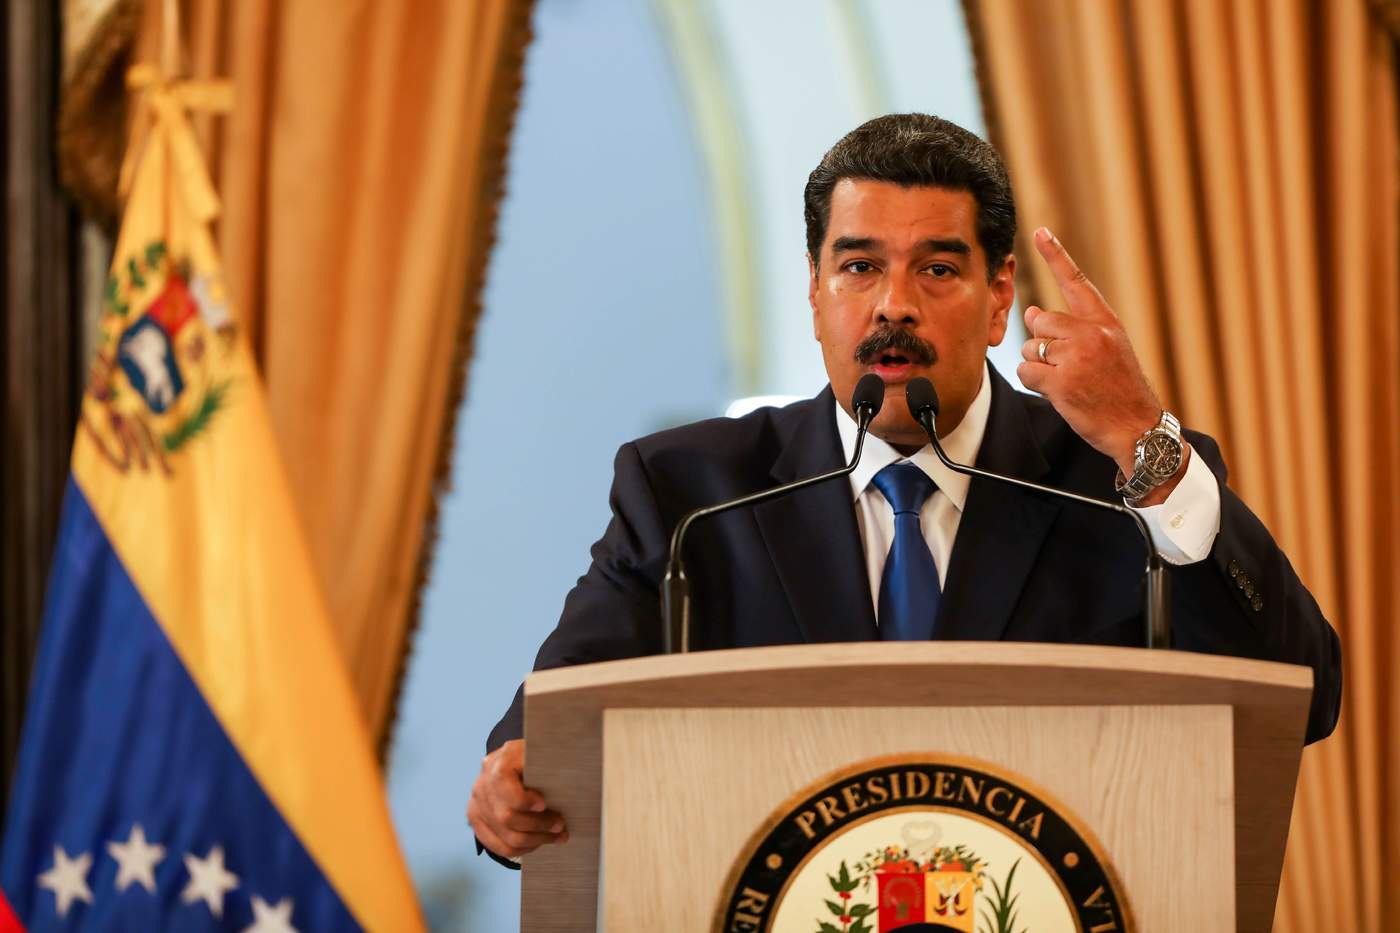 Alto oficial de la fuerza armada venezolana desconoce a Maduro